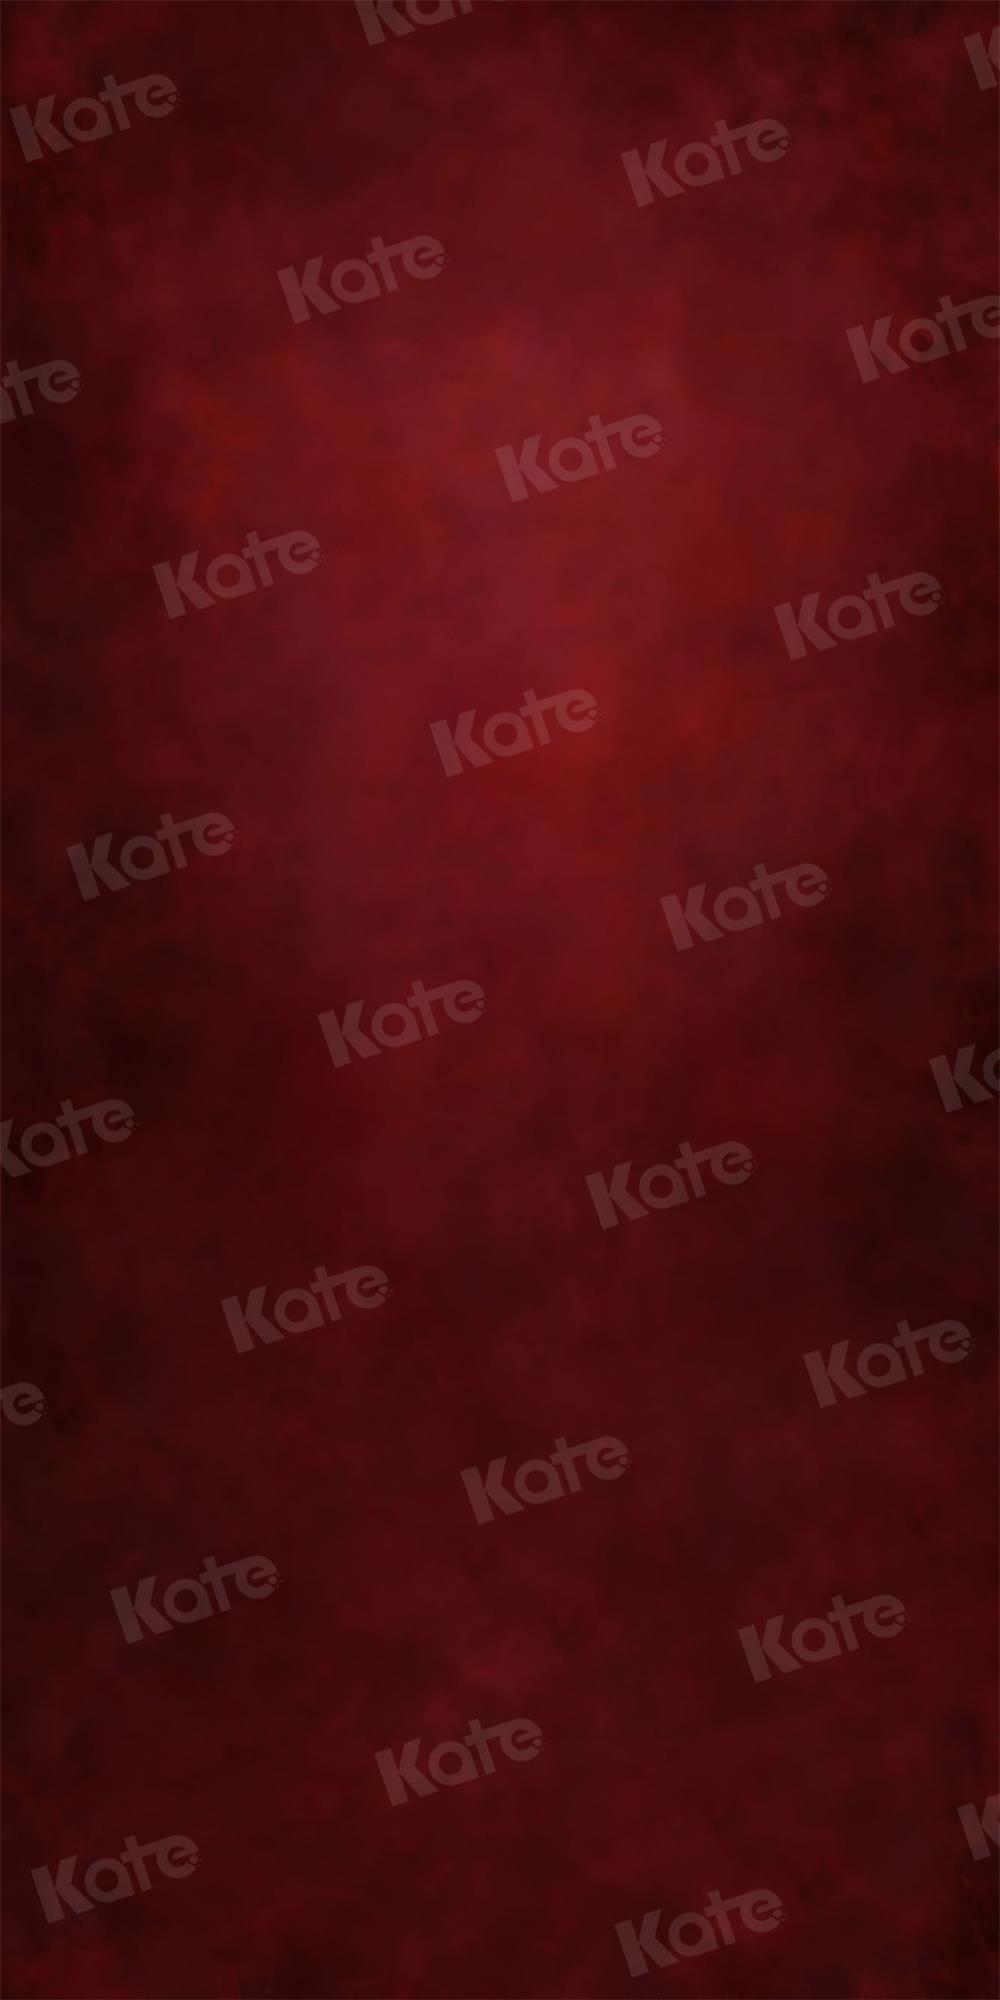 Kate Balayage Rouge Portrait Abstrait Toile de fond pour la photographie